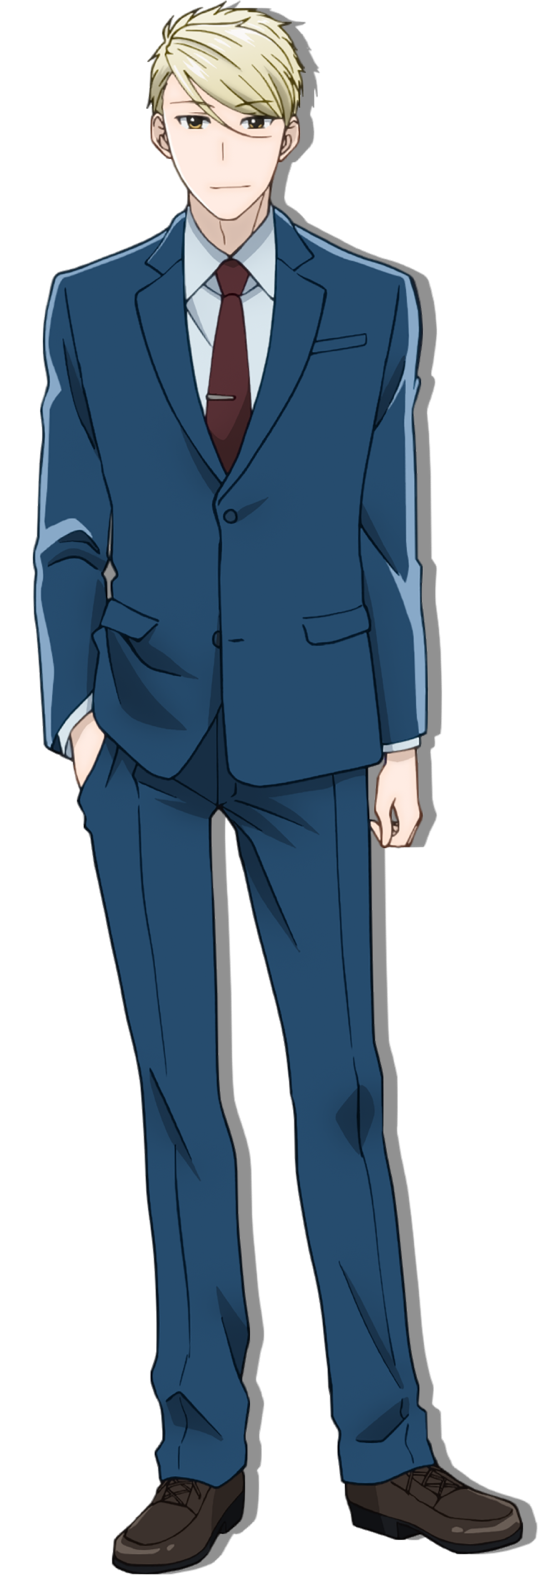 Amakusa Shirou Tokisada - Kotomine Shirou (Fate/Apocrypha) - Image by oku  (Mangaka) #2561239 - Zerochan Anime Image Board